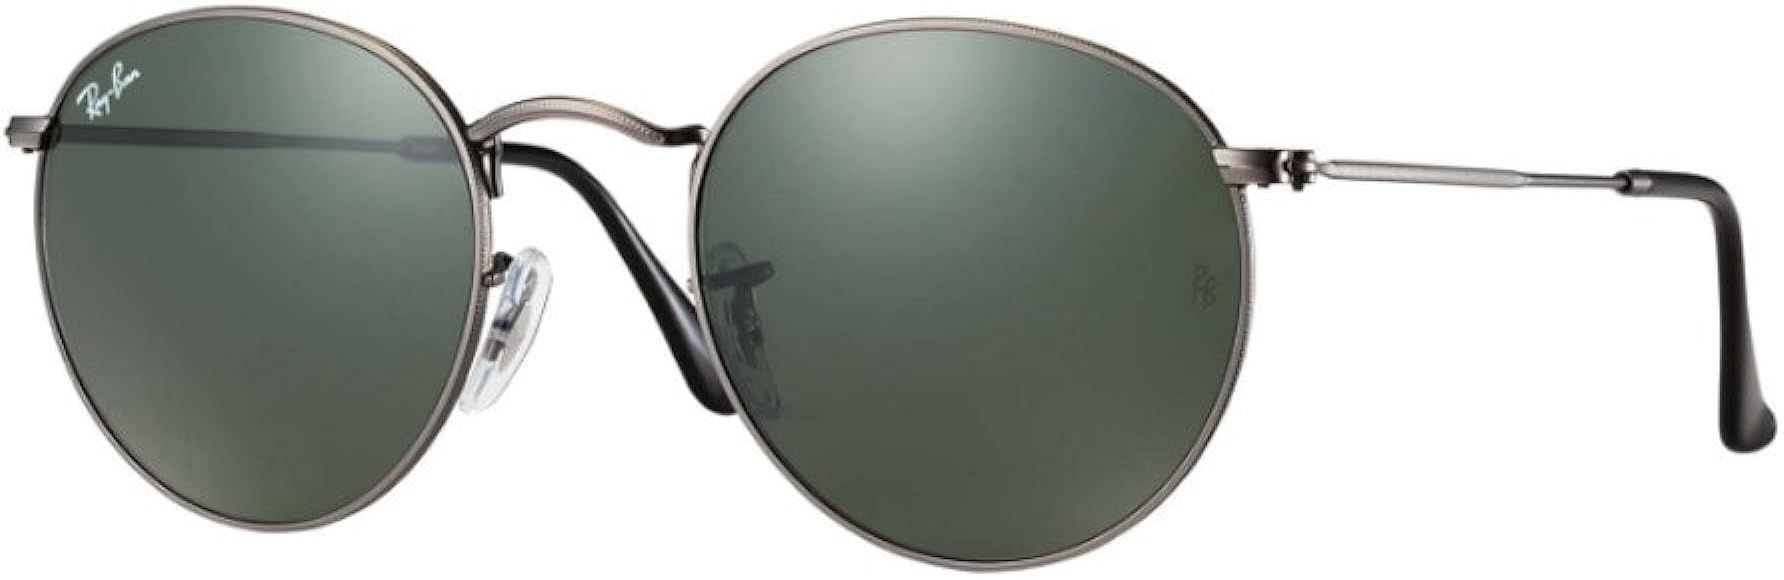 Round Sunglasses RB3447 John Lennon (50 mm Gunmetal Frame Solid Black G15 Lens) | Amazon (US)